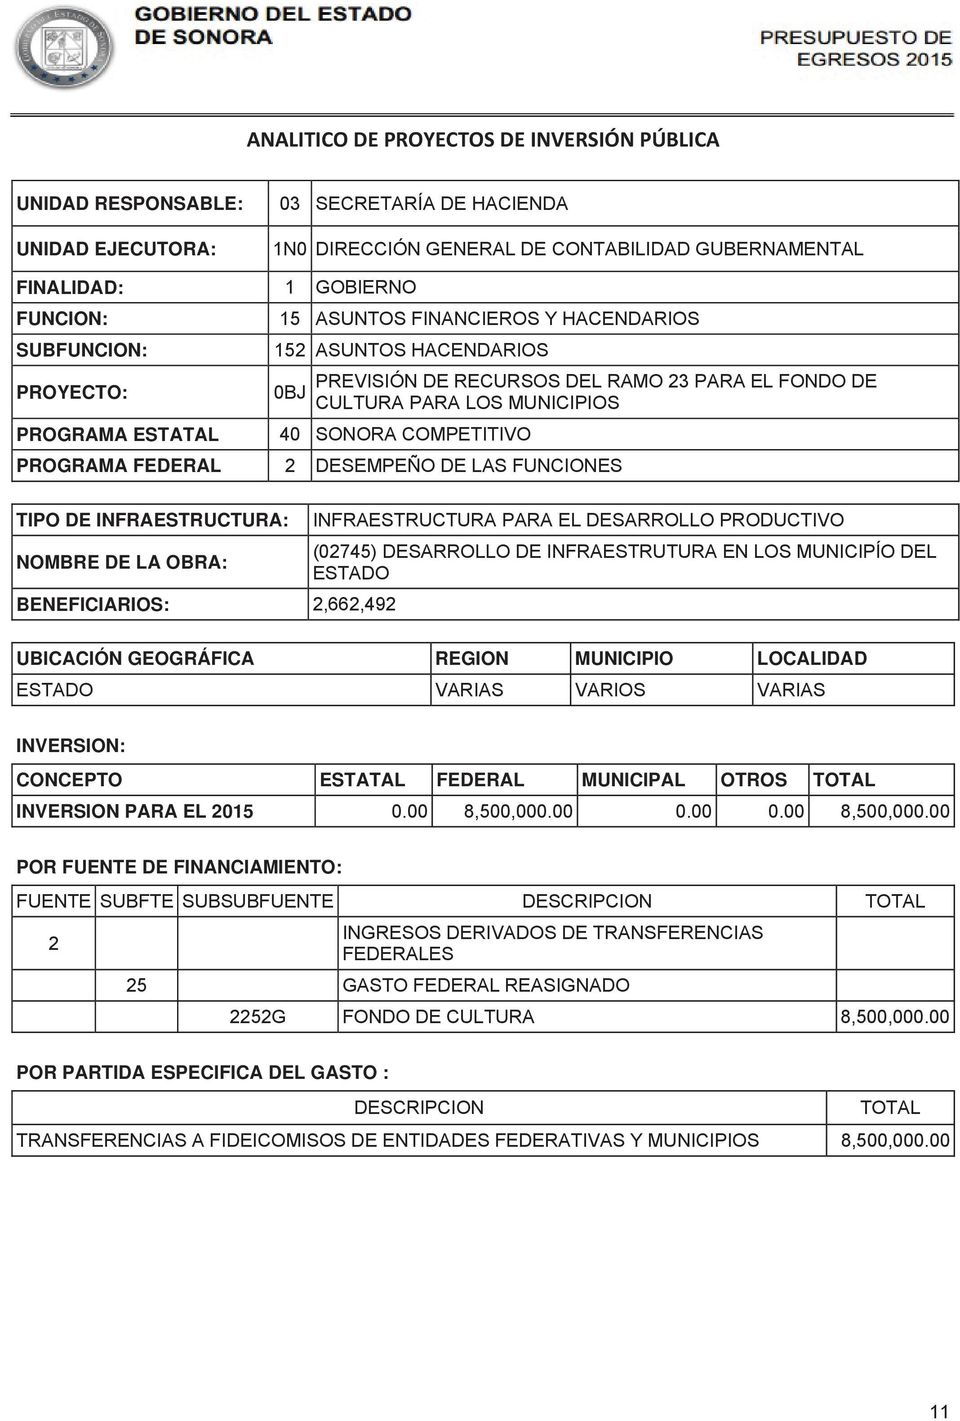 DESARROLLO PRODUCTIVO (0745) DESARROLLO DE INFRAESTRUTURA EN LOS MUNICIPÍO DEL ESTADO BENEFICIARIOS:,66,49 ESTADO VARIAS VARIOS VARIAS CONCEPTO ESTATAL FEDERAL MUNICIPAL OTROS INVERSION PARA EL 015 0.